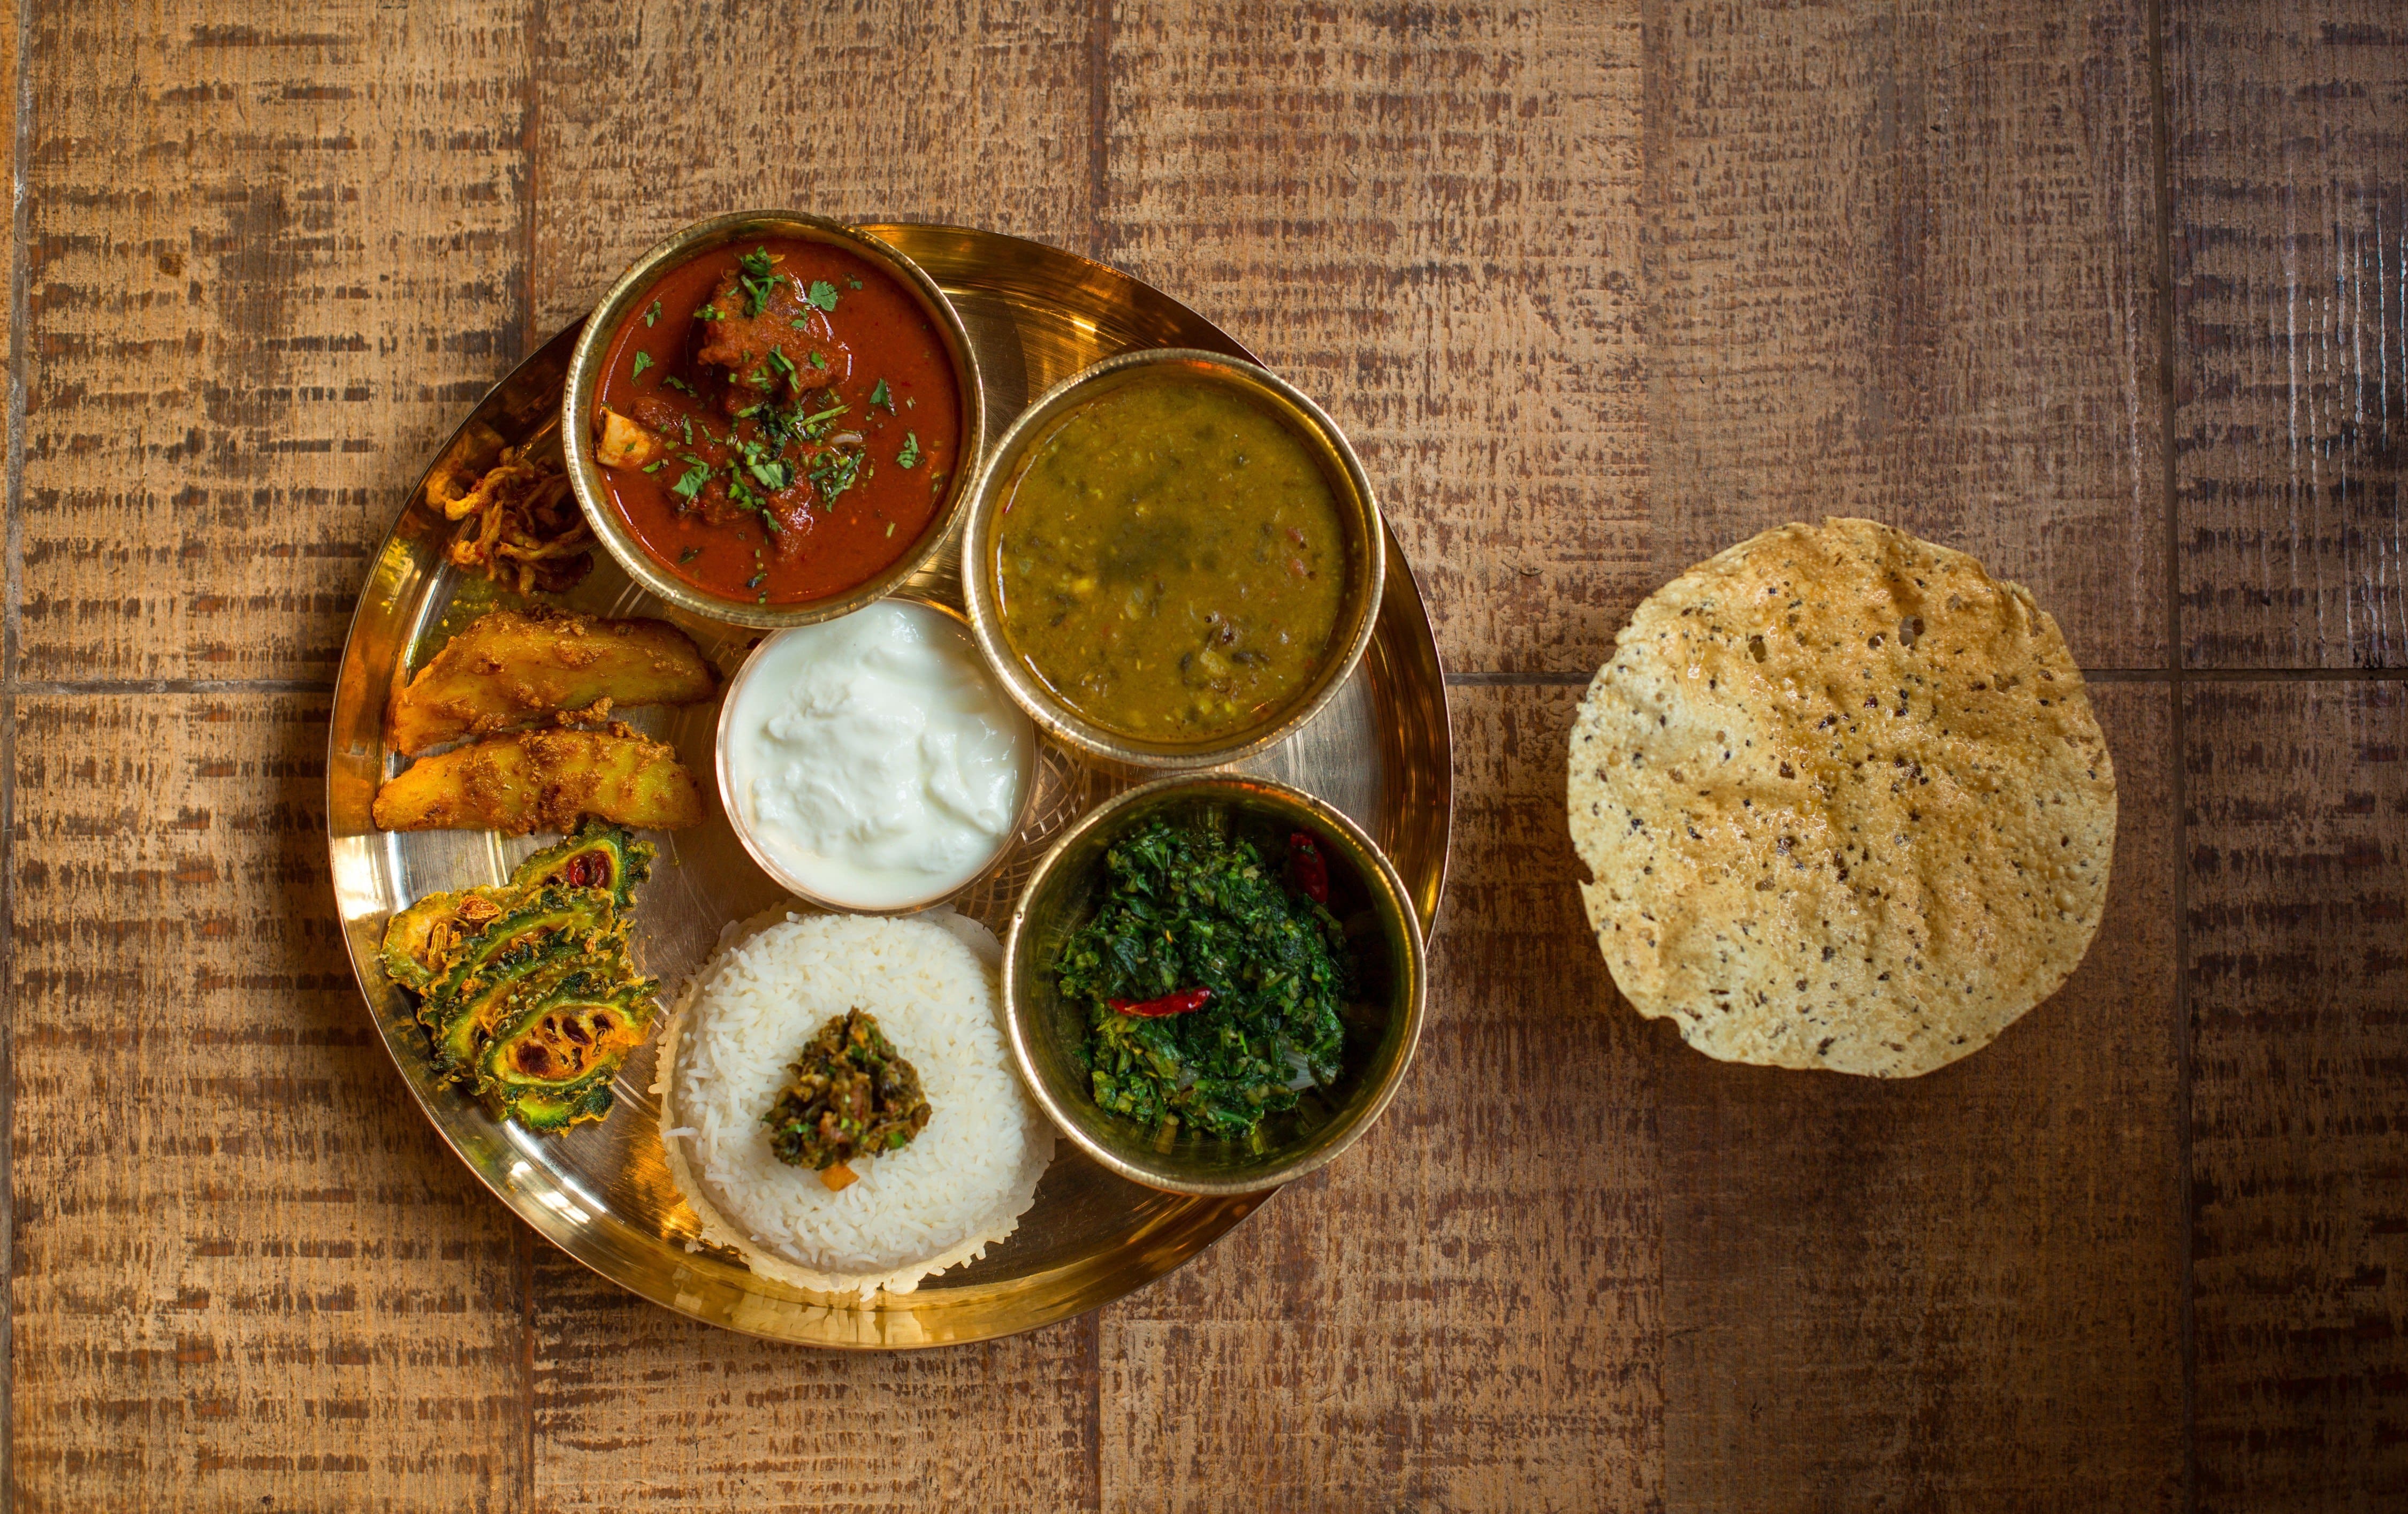 Yeti - The Himalayan Kitchen, Malviya Nagar, New Delhi